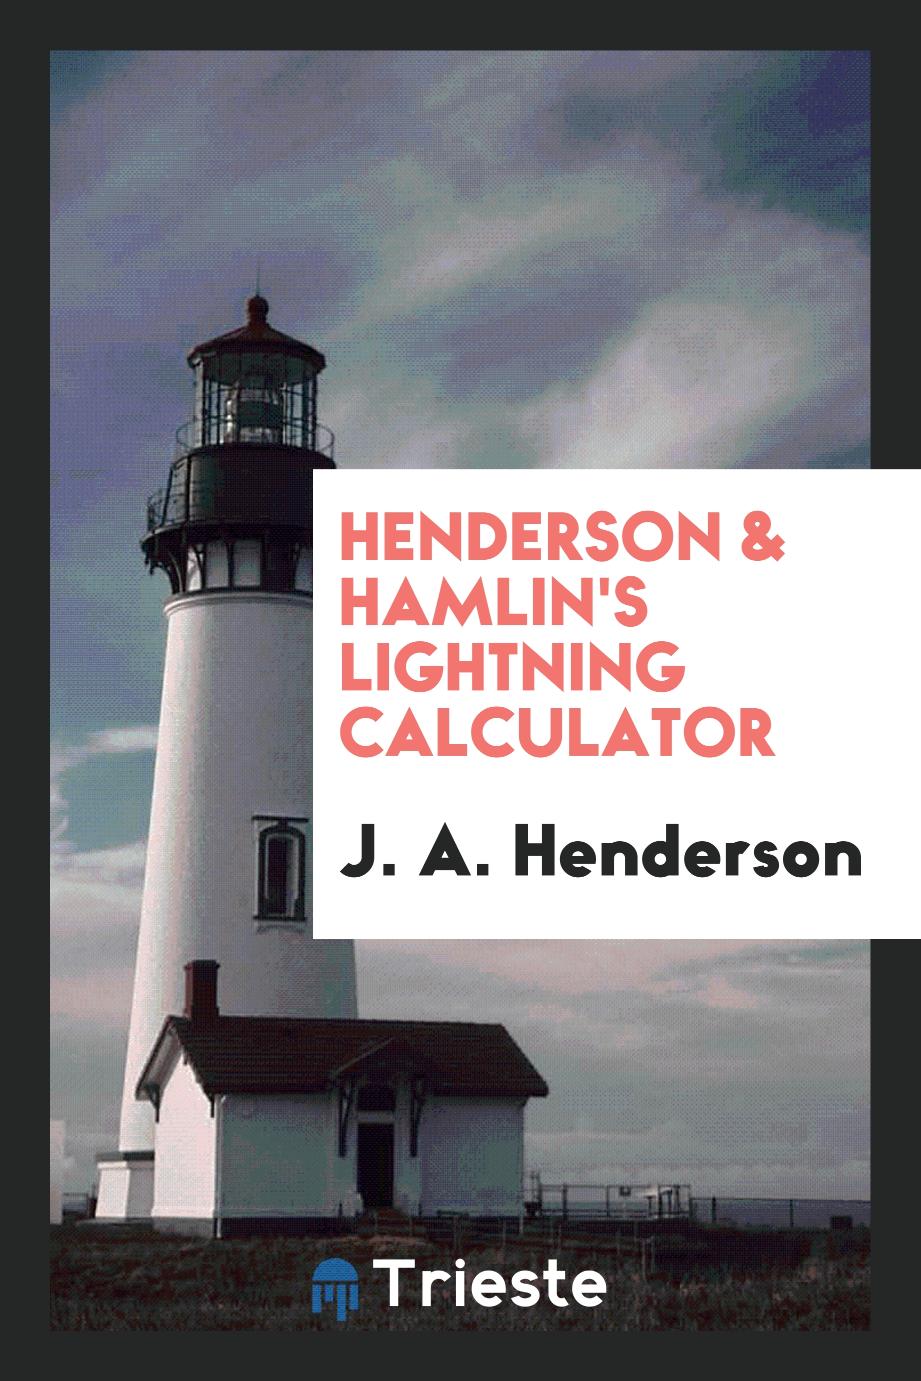 Henderson & Hamlin's Lightning Calculator